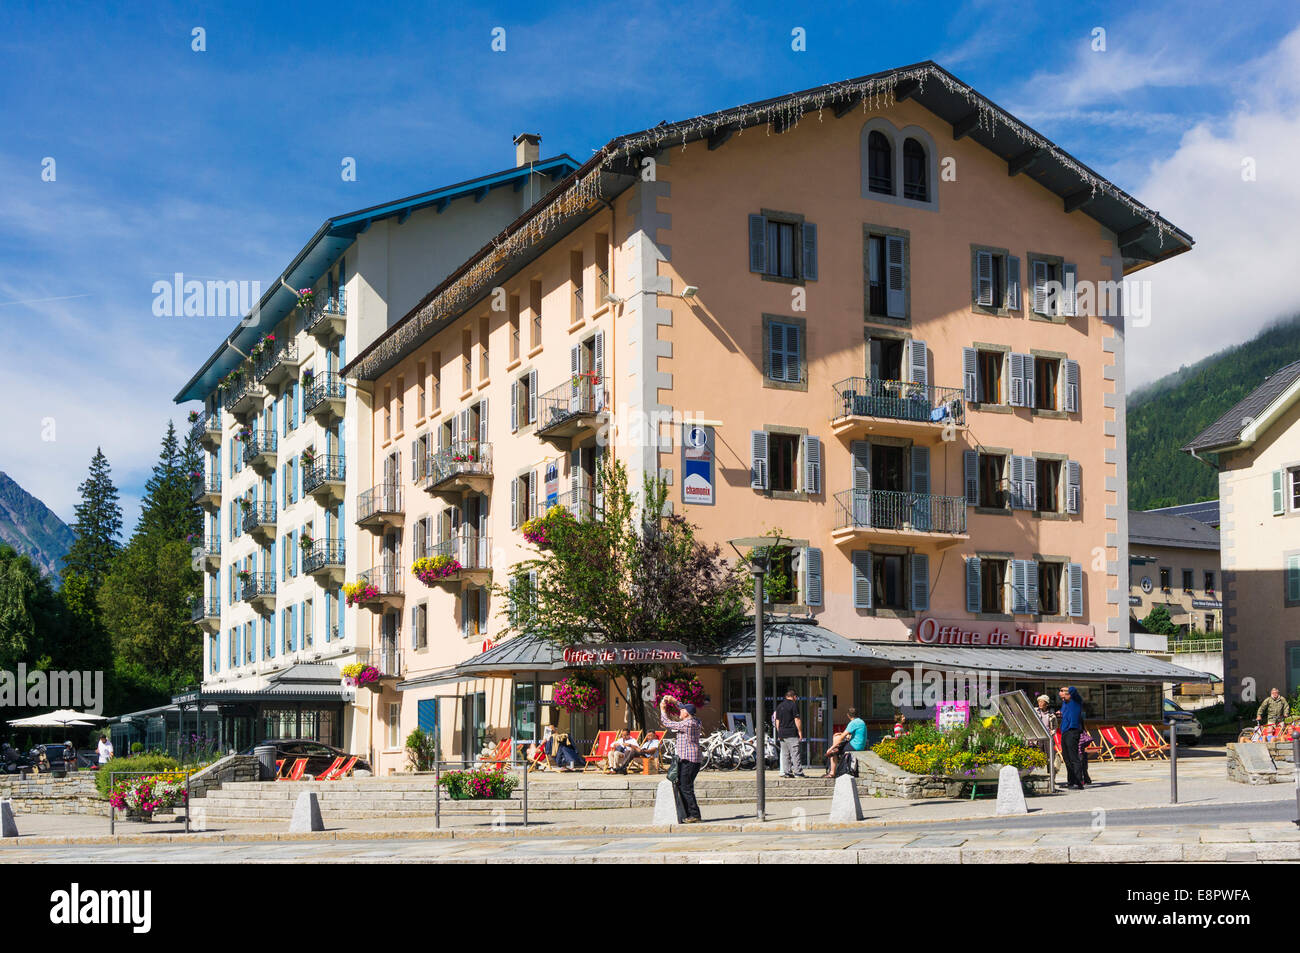 Office du Tourisme à Chamonix, Alpes, France, Europe Banque D'Images